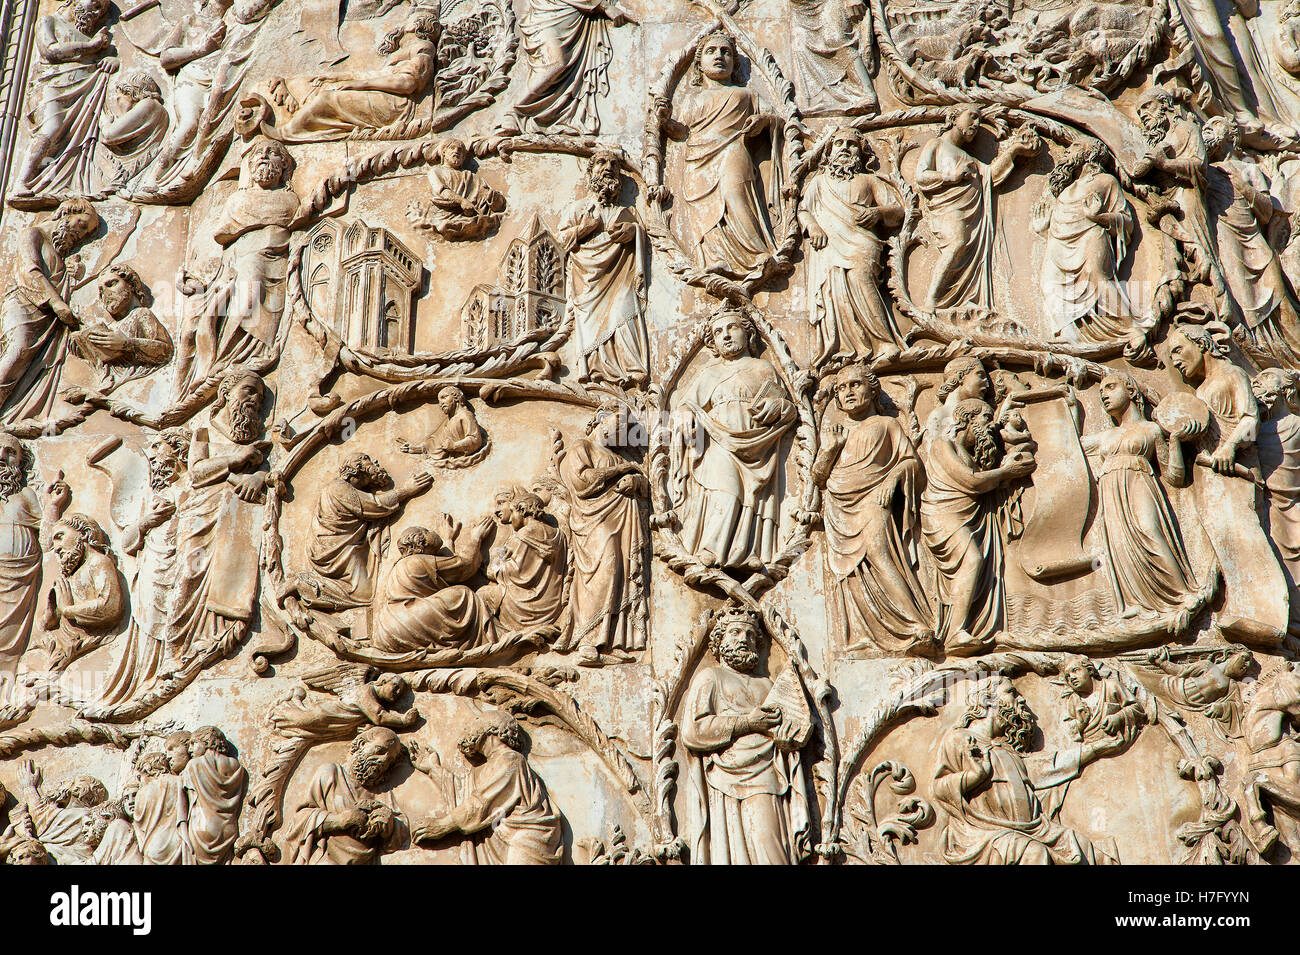 Sculpture bas-relief de bord de la Bible par Maitani, vers1310, façade gothique toscan, Cathédrale d'Orvieto, Ombrie, Italie Banque D'Images